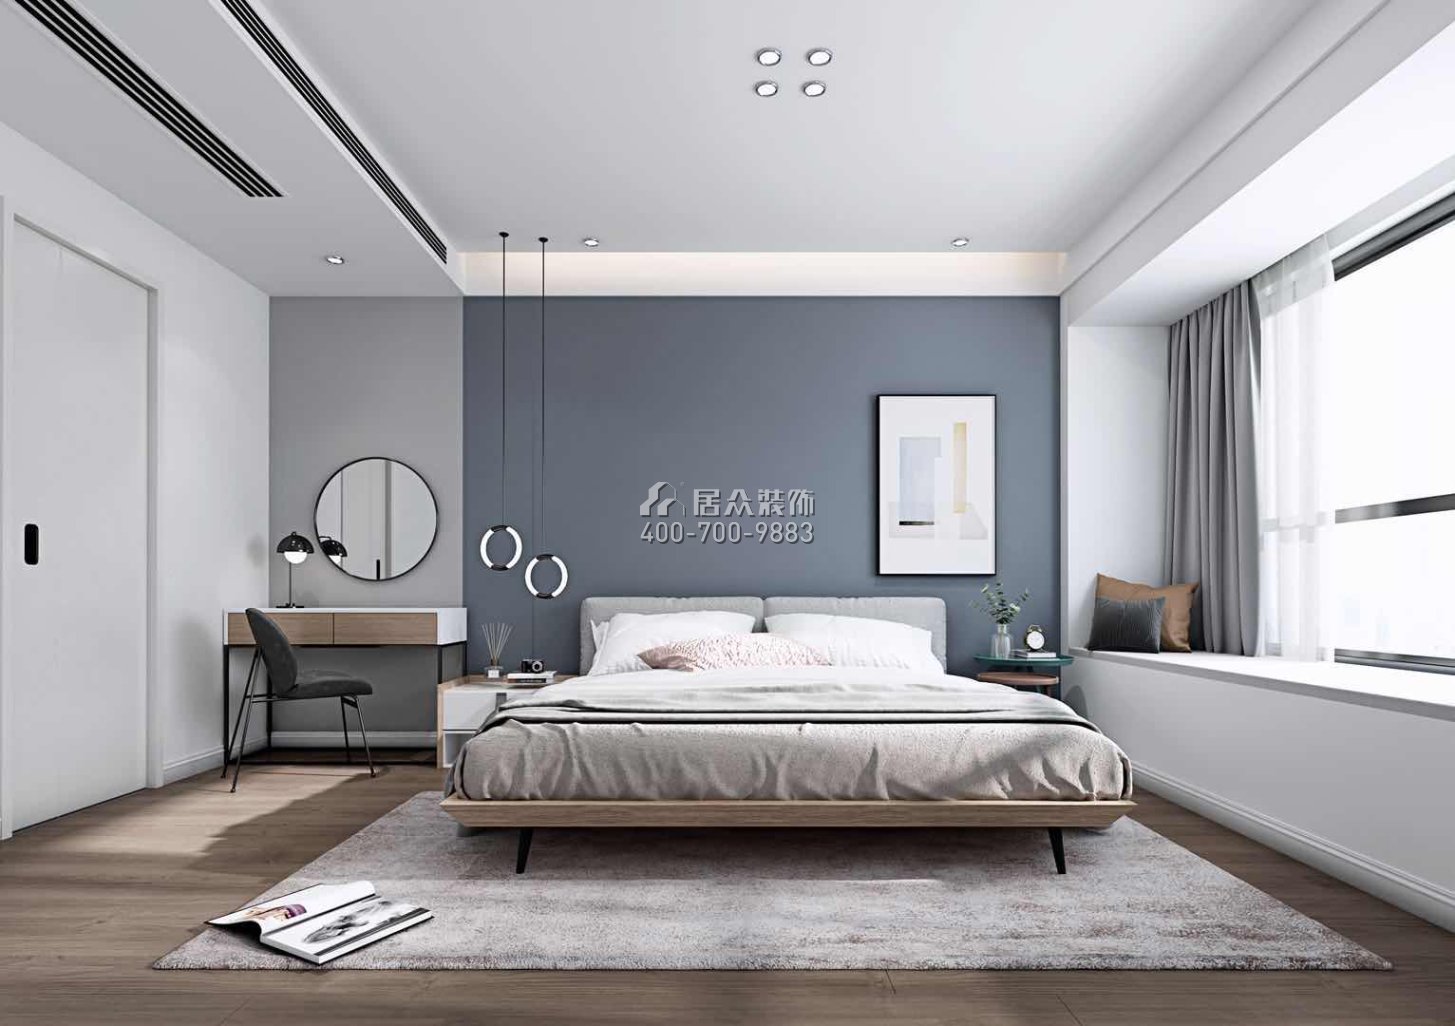 华发世纪城四期130平方米现代简约风格平层户型卧室装修效果图